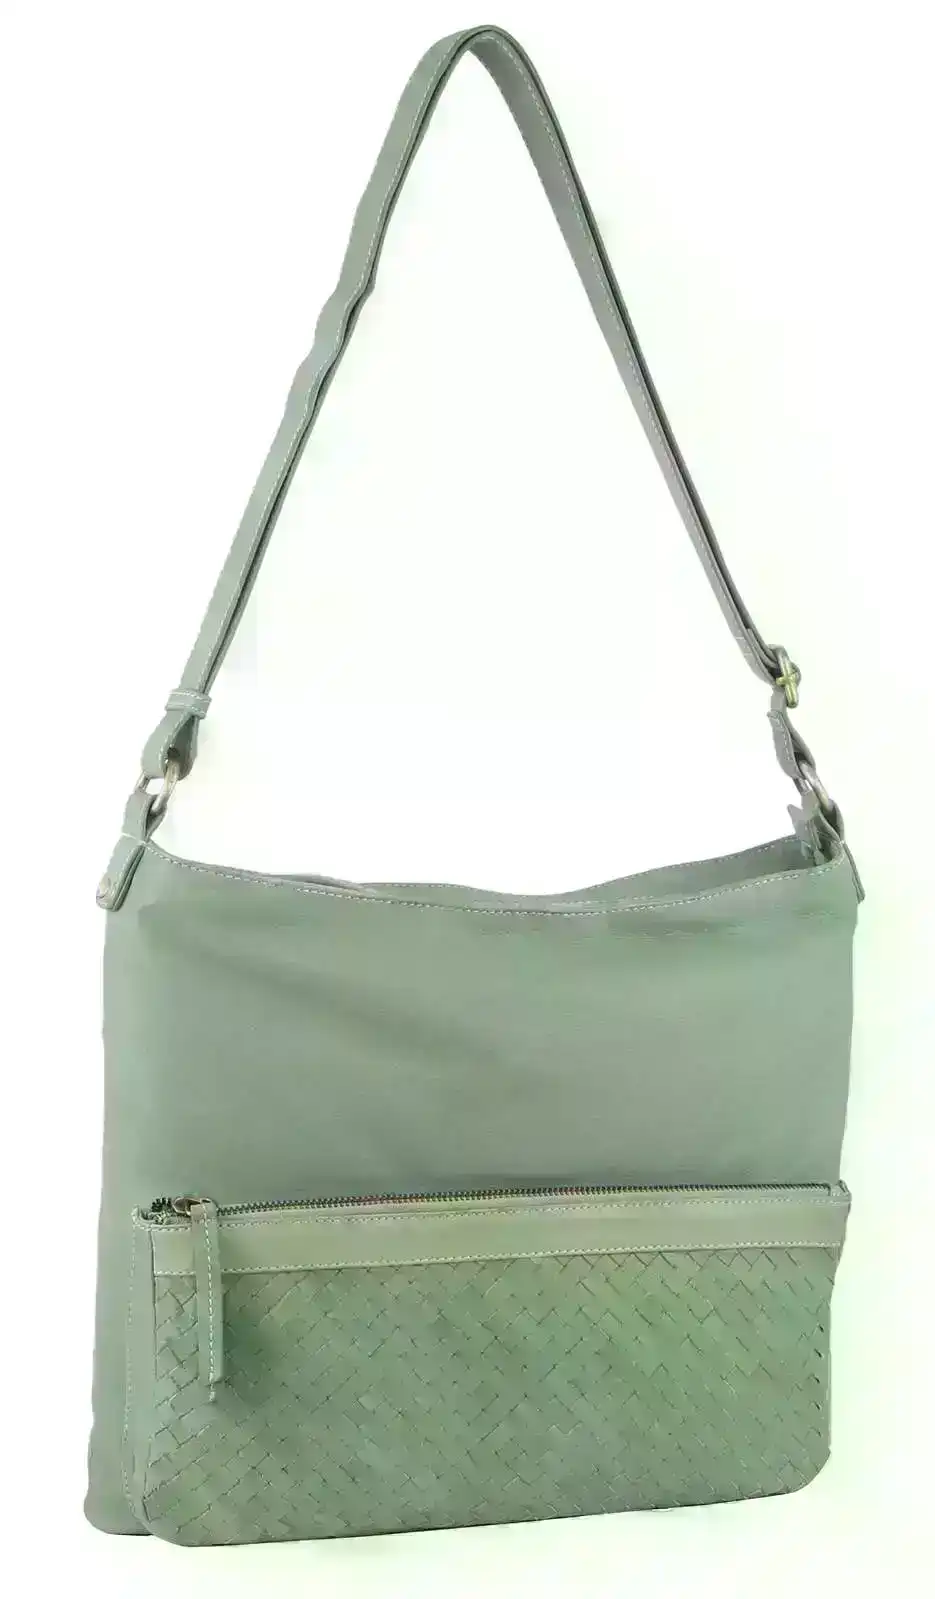 Pierre Cardin Womens Woven Leather Flap Cross-Body Bag Handbag - Mint